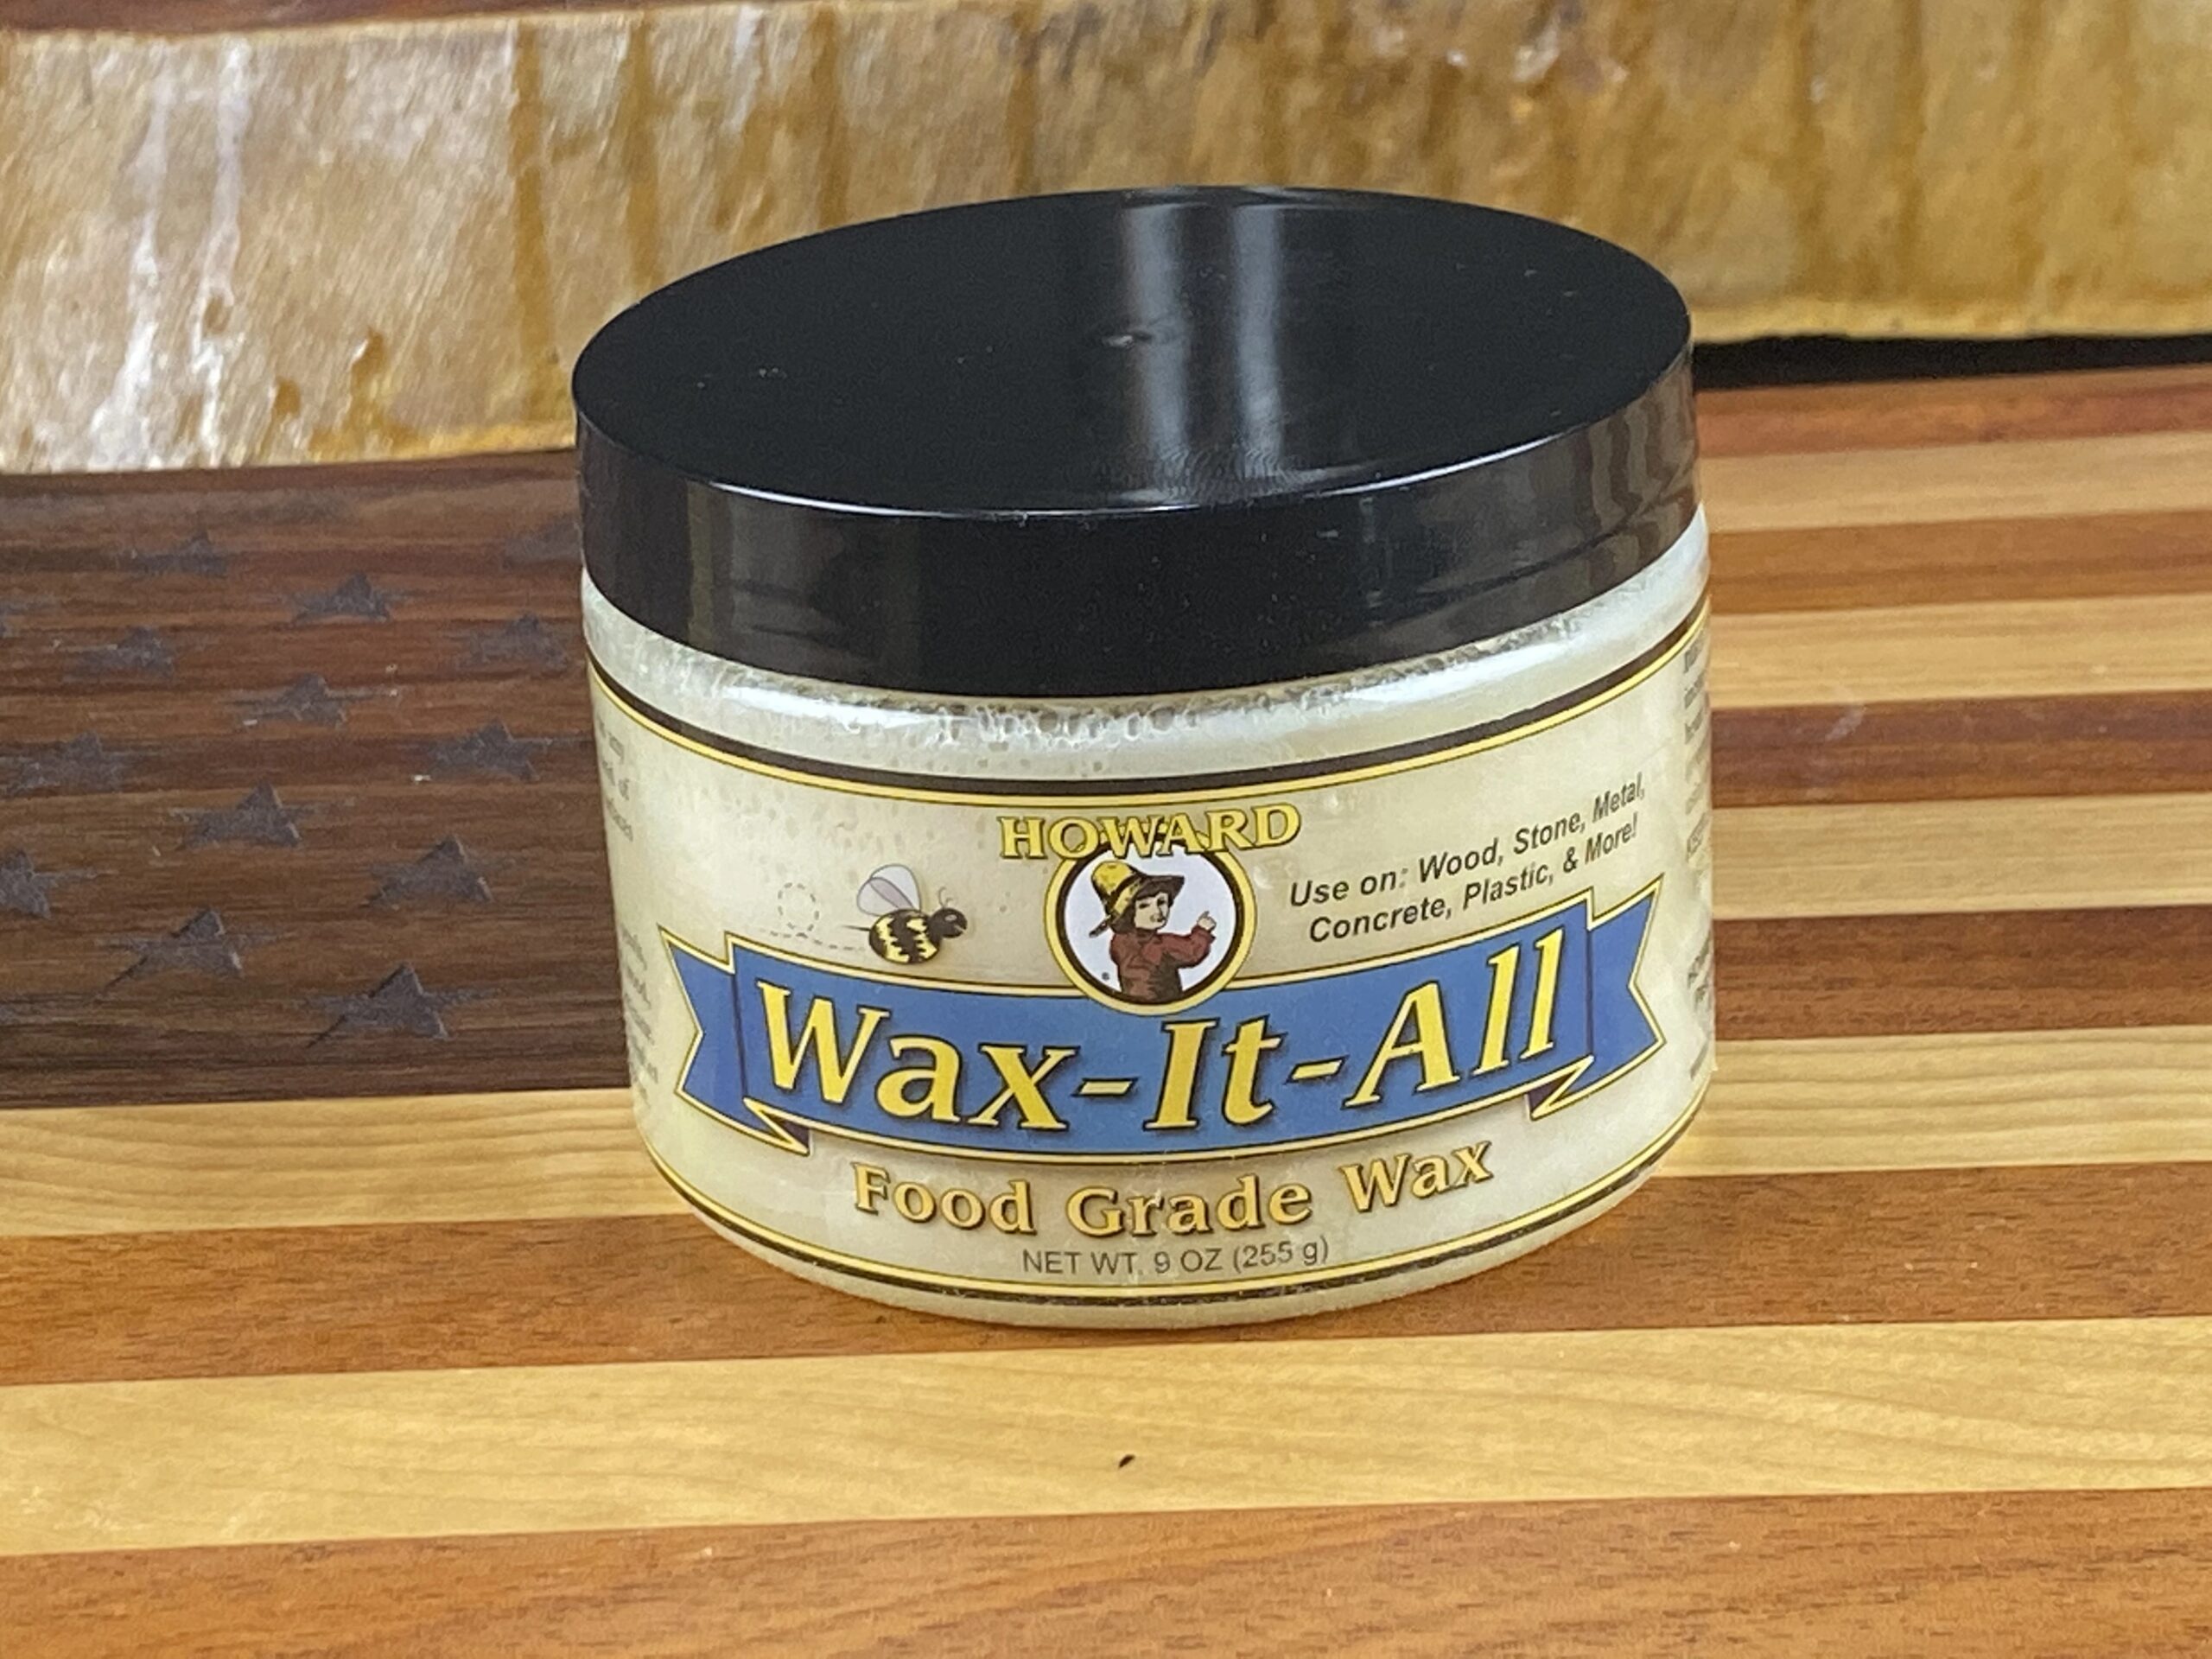 Wax-It-All